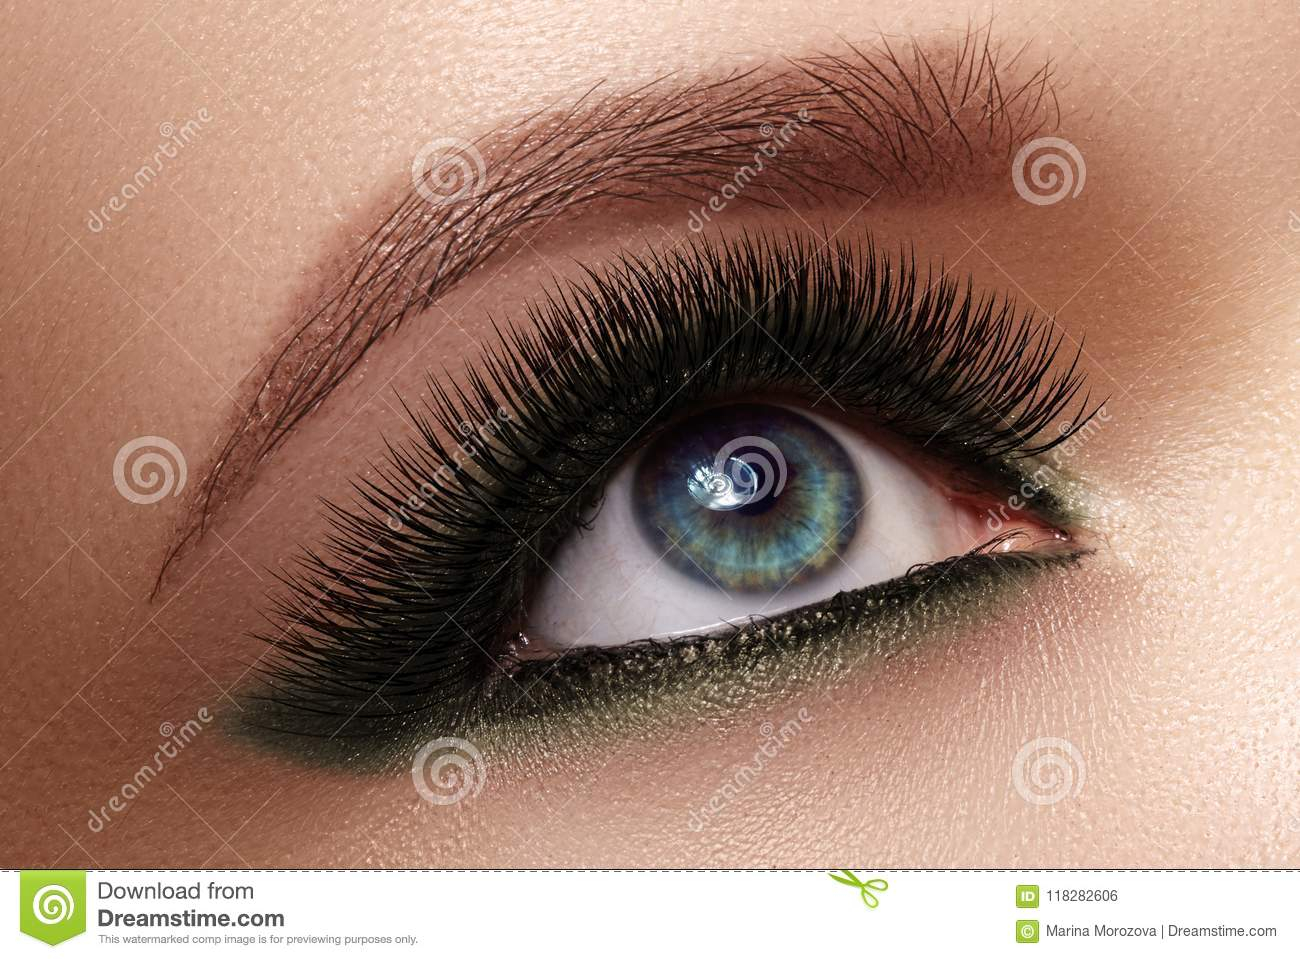 Extreme Eye Makeup Beautiful Female Eye With Extreme Long Eyelashes Black Liner Makeup